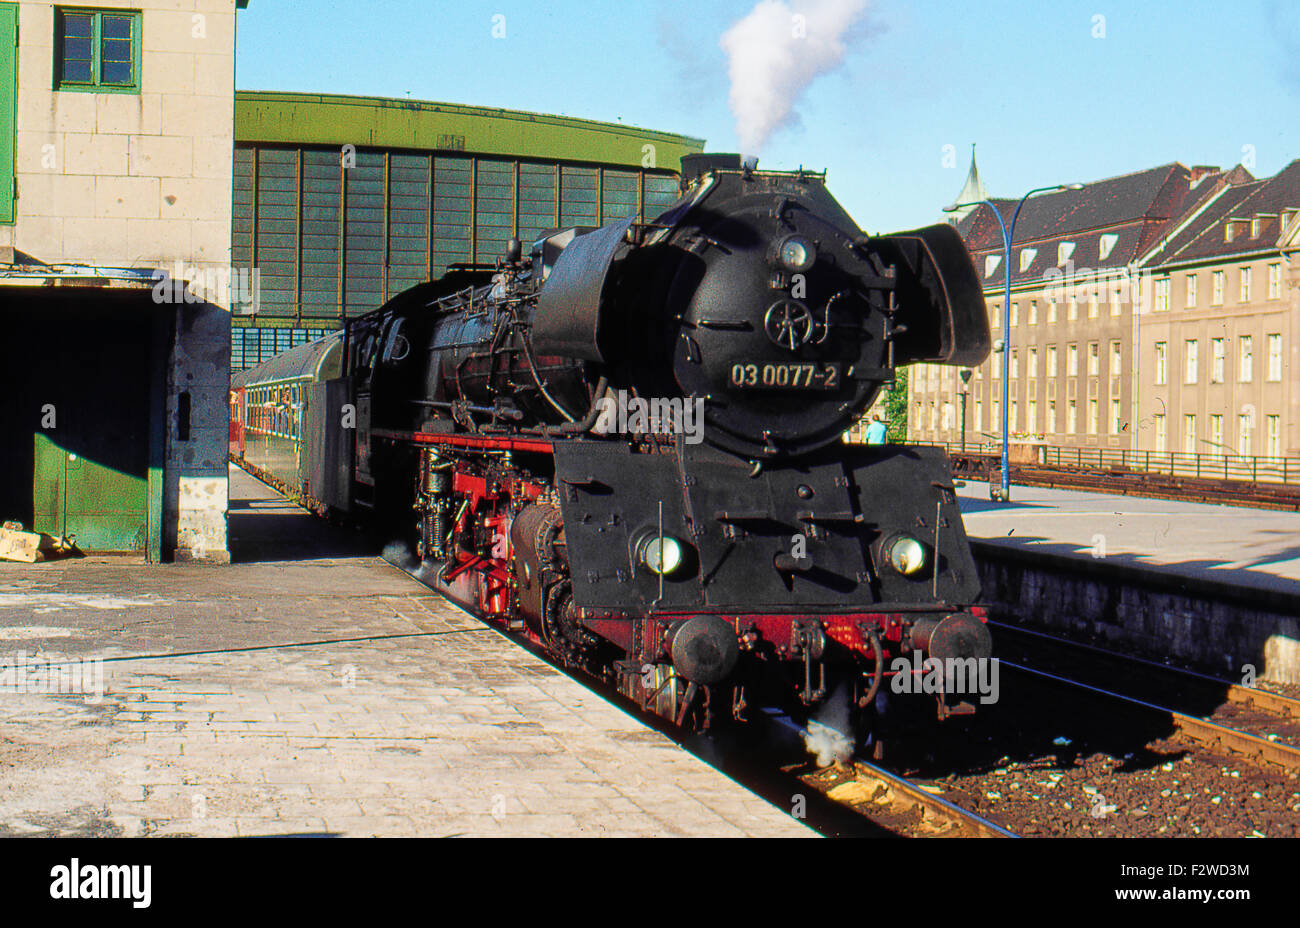 06.06.1976, Berlín, Bundesrepublik Alemania - El 03 0077 de la estación de tren Zoologischer Garten. Este tren expreso era Foto de stock